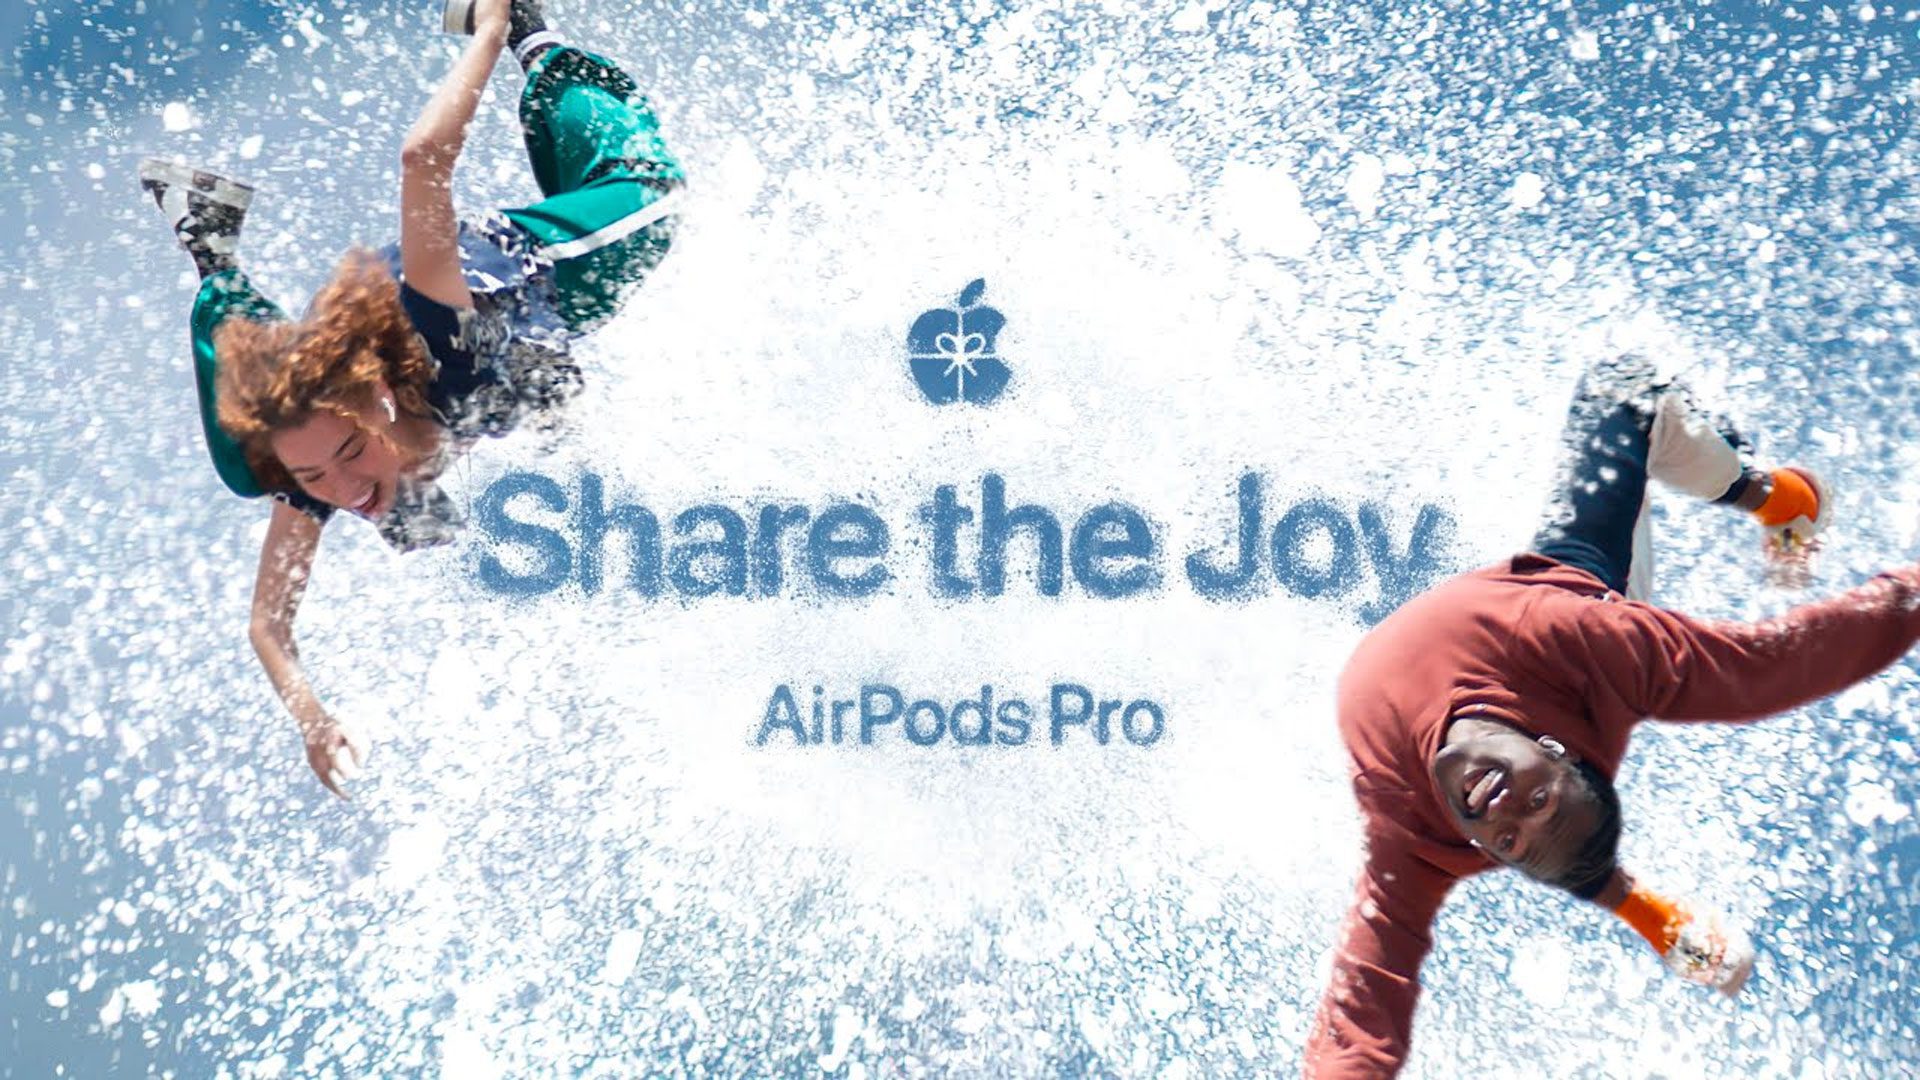 Share The Joy - vianočná reklama od Apple